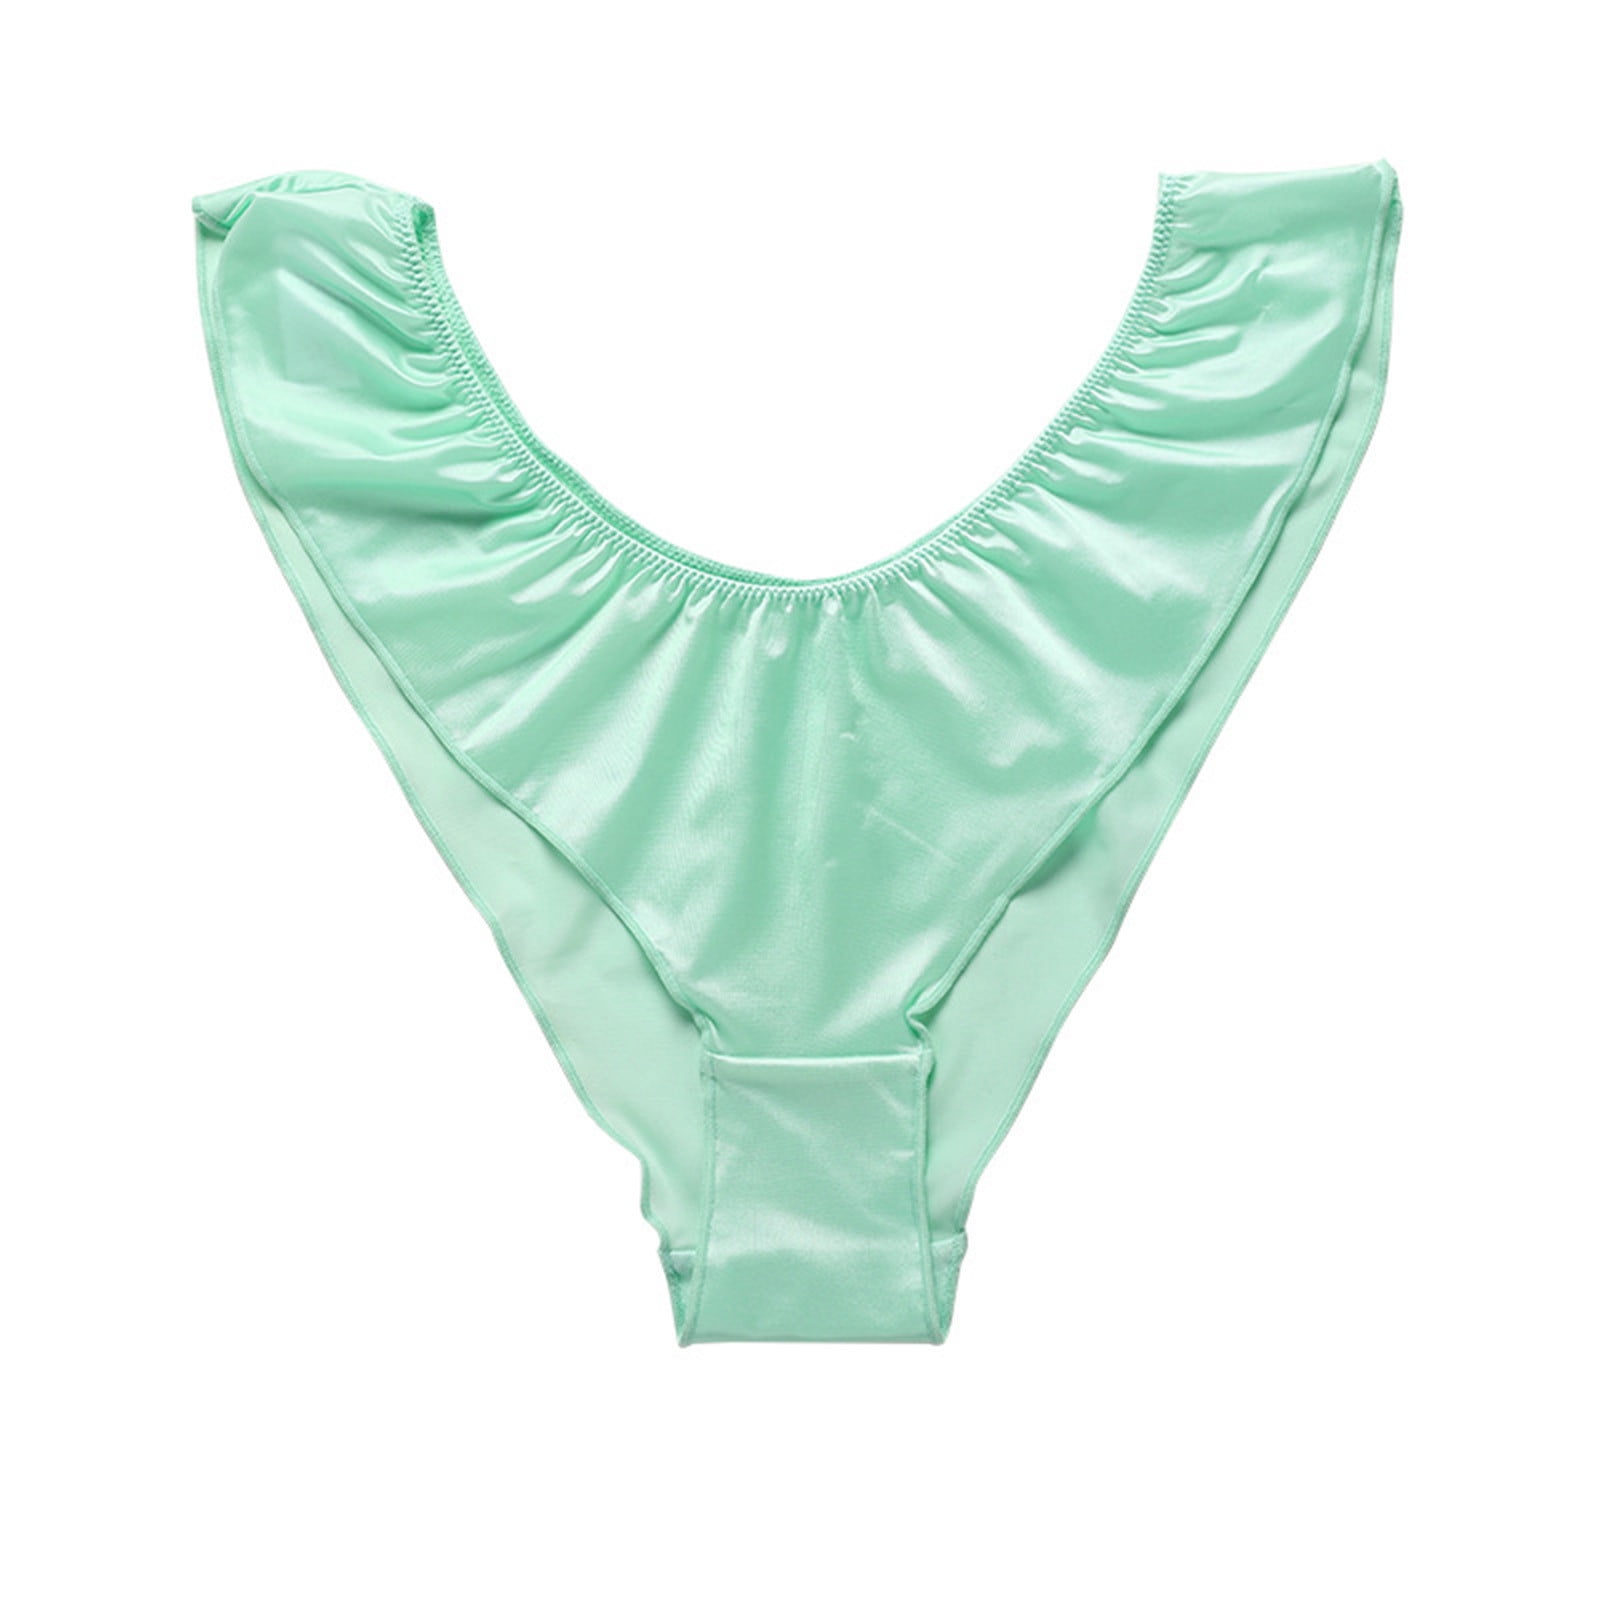 JGTDBPO Seamless Underwear for Women Sexy Lace No Show Bikini Soft